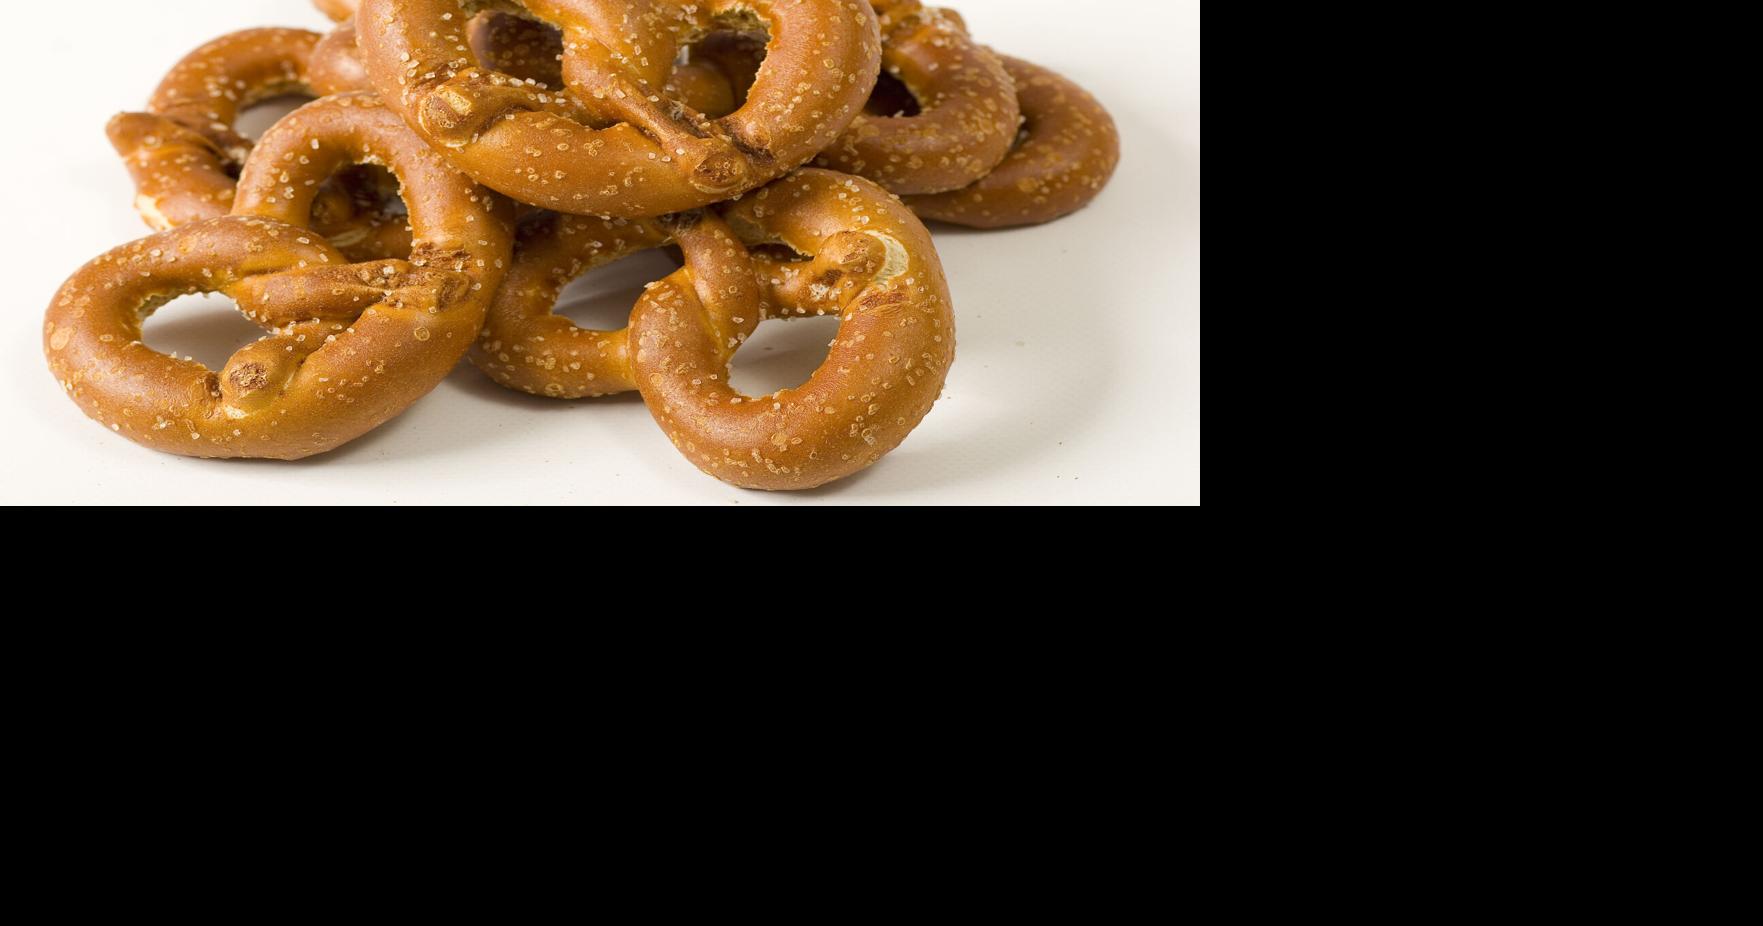 Sheetz offers free soft pretzels this week